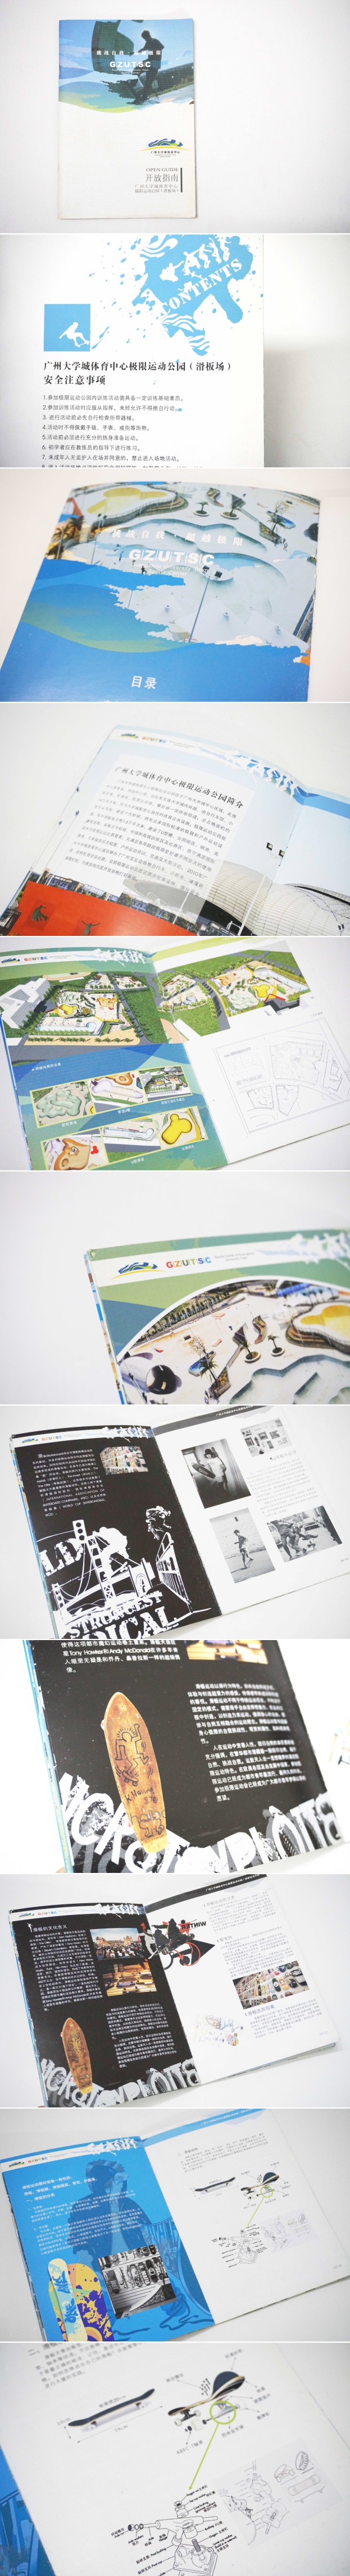 广州极限运动公园画册设计